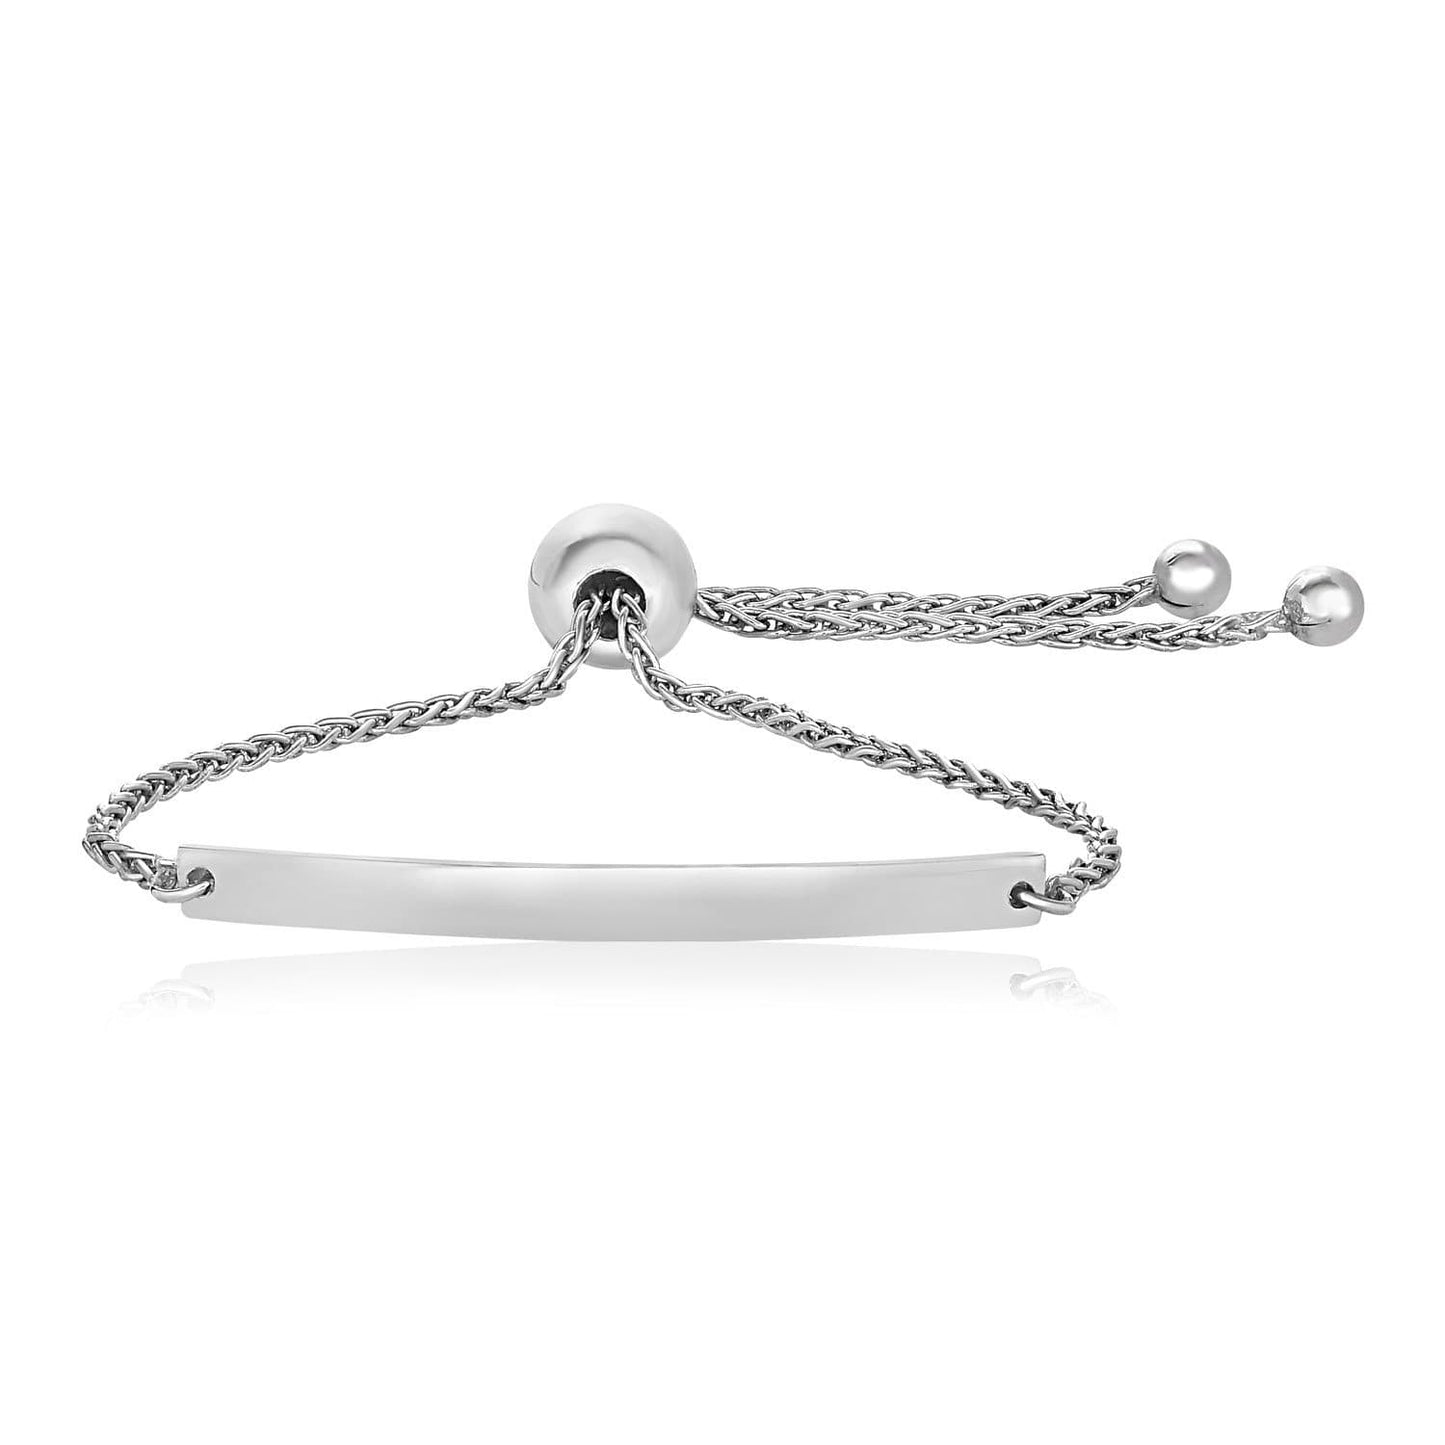 Sterling Silver 9 1/4 inch Adjustable Bracelet with Polished Curved Bar